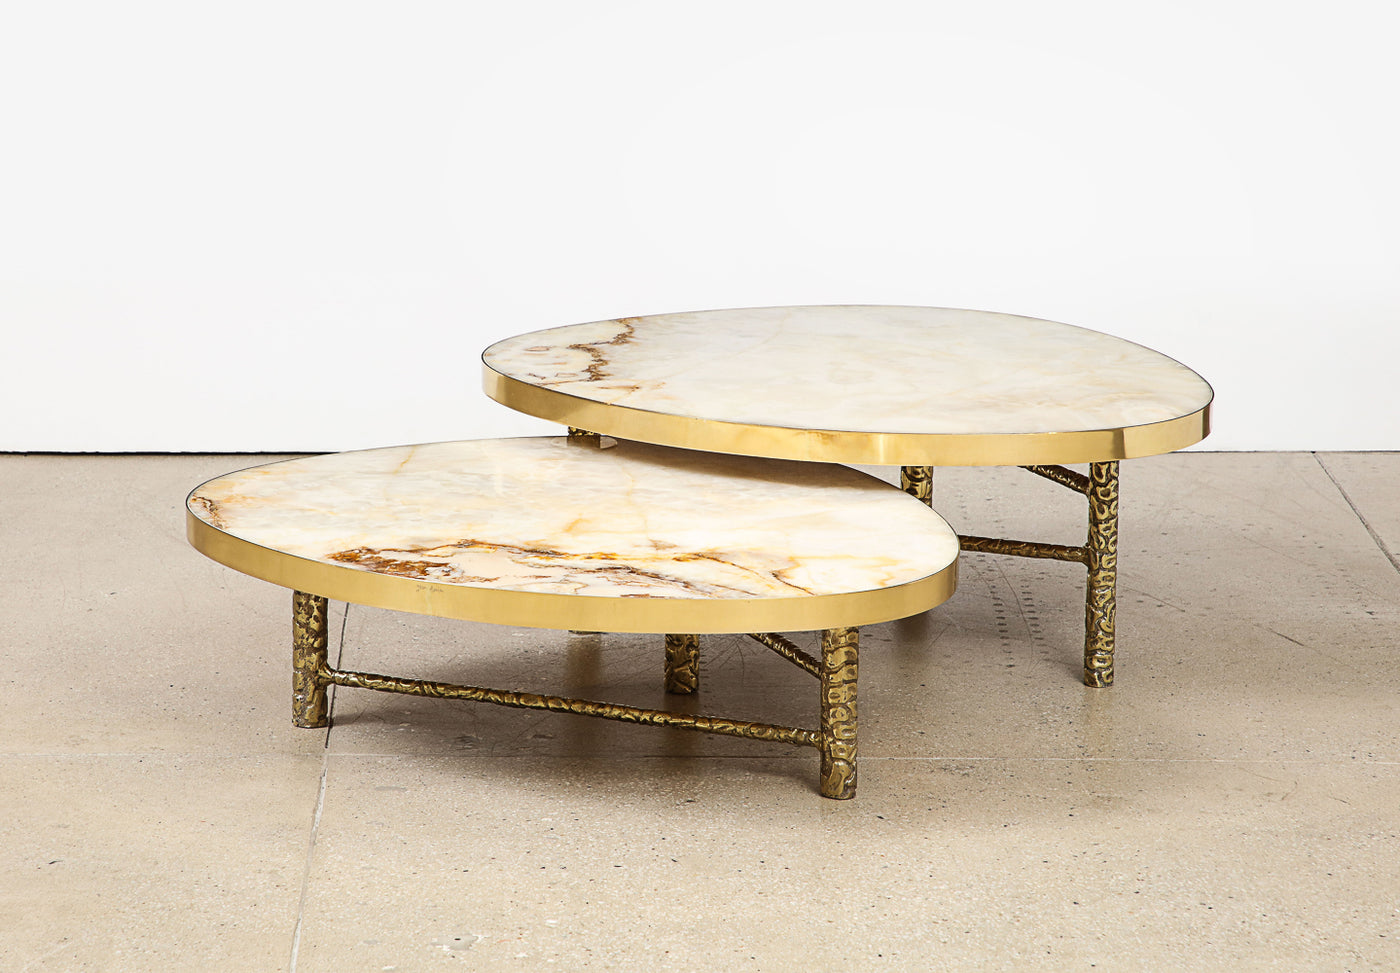 Studio-made Meteoris Tables by Arriau